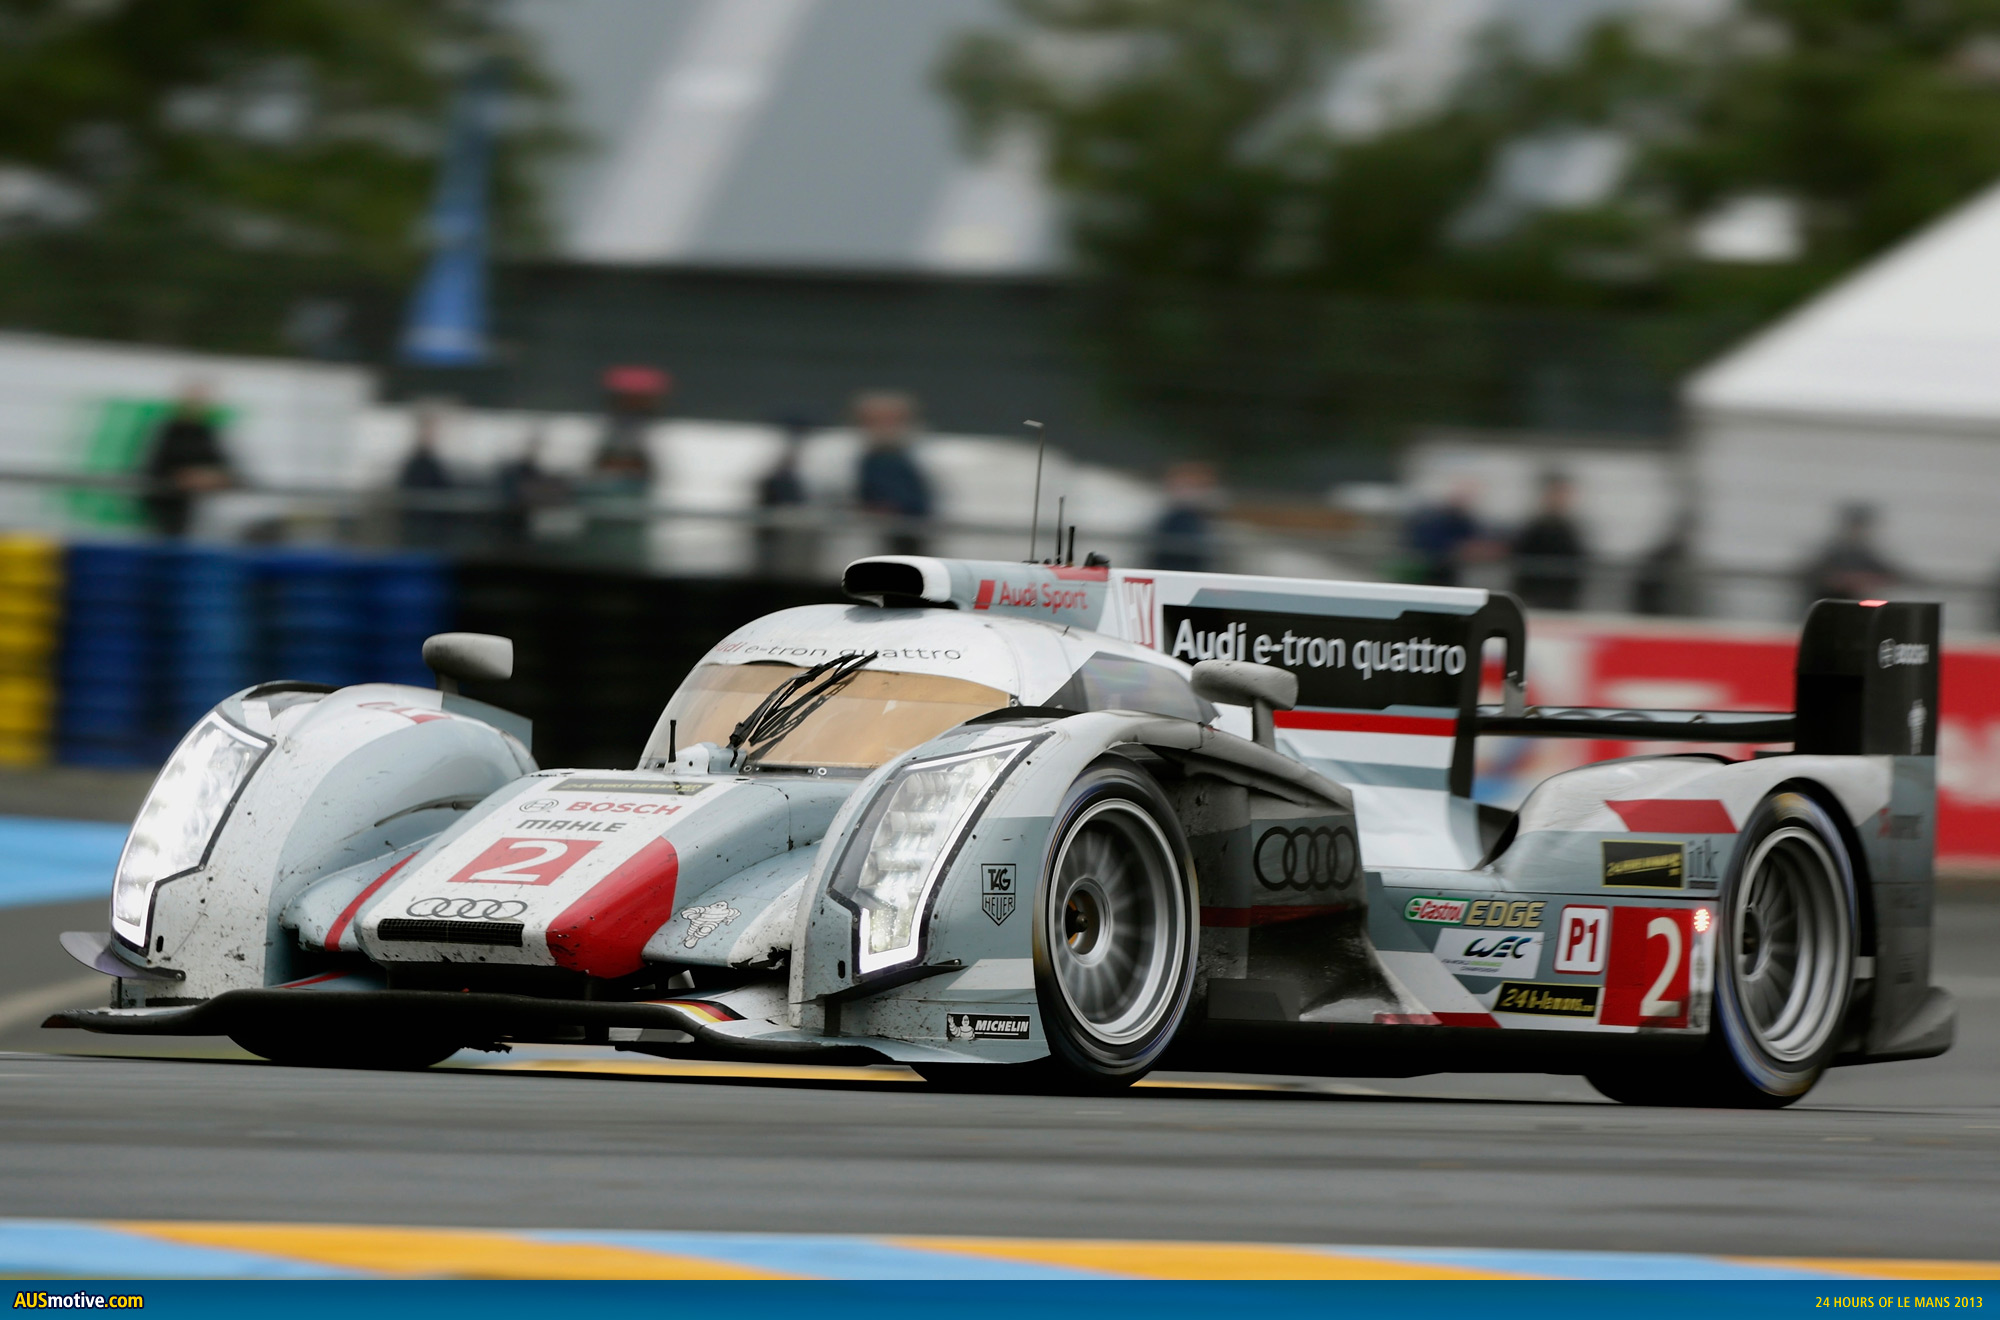 AUSmotive.com Â» Audi wins 2013 24 Hours of Le Mans